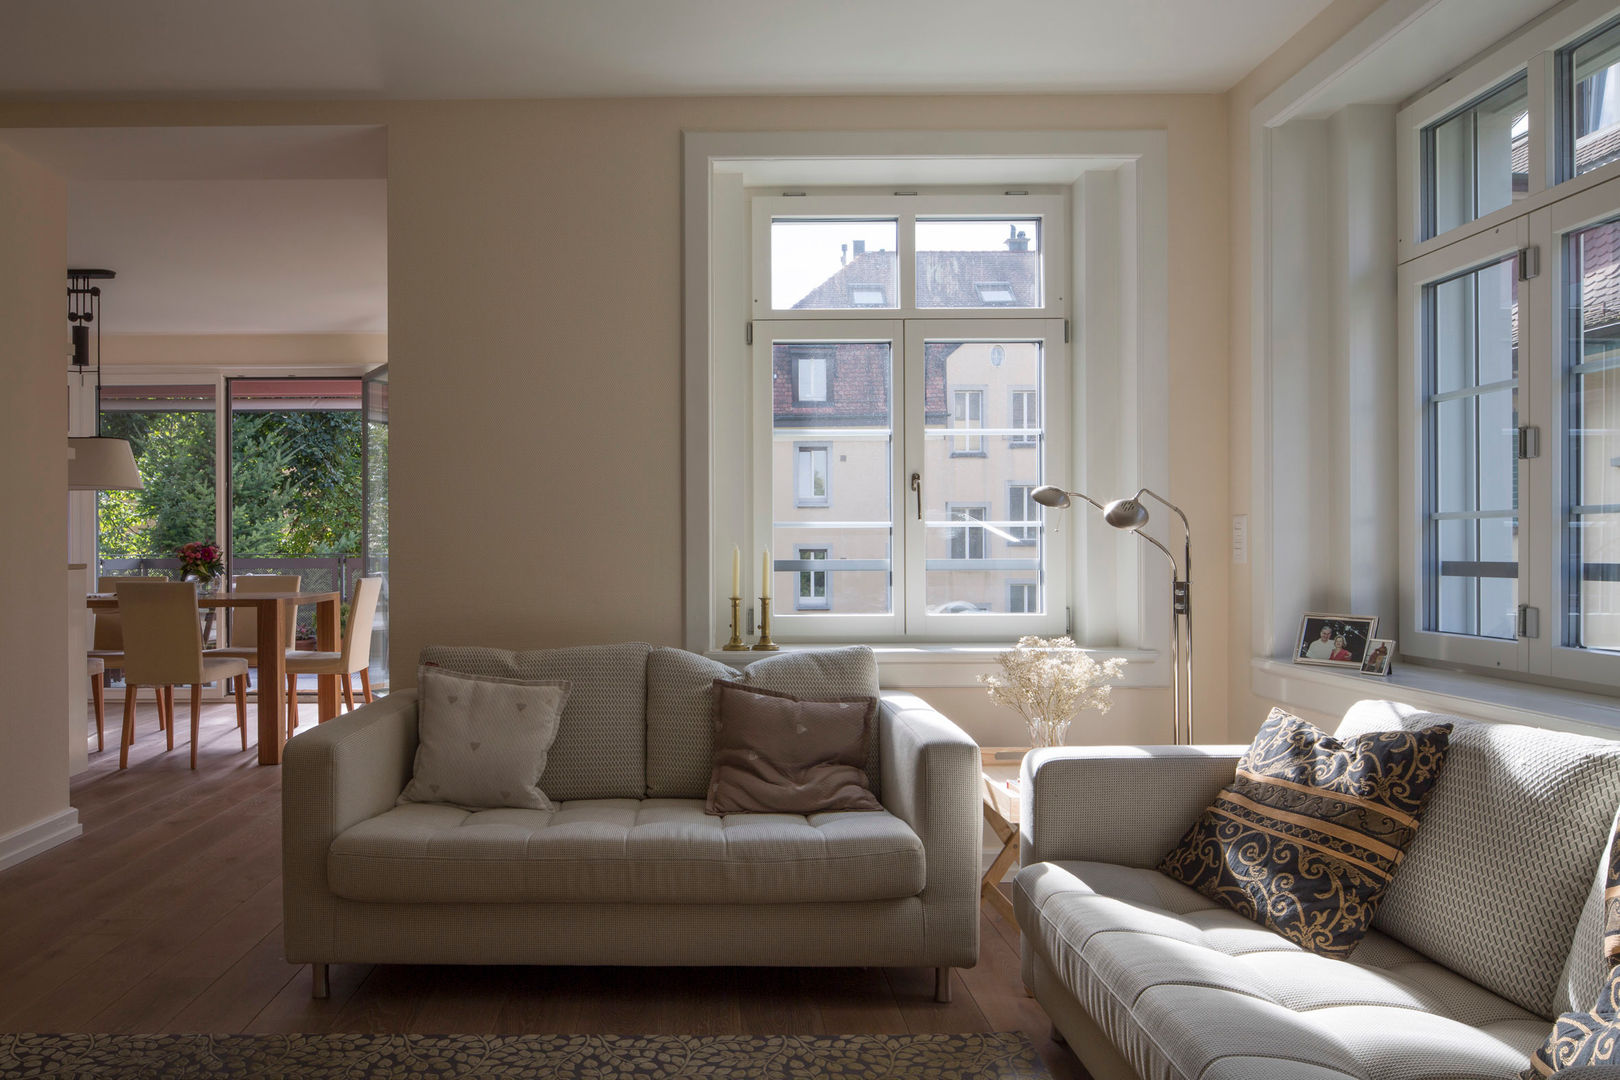 Mehrfamilienhaus in Zürich- Hirslanden, Tschander.Keller architekten Tschander.Keller architekten Classic style living room